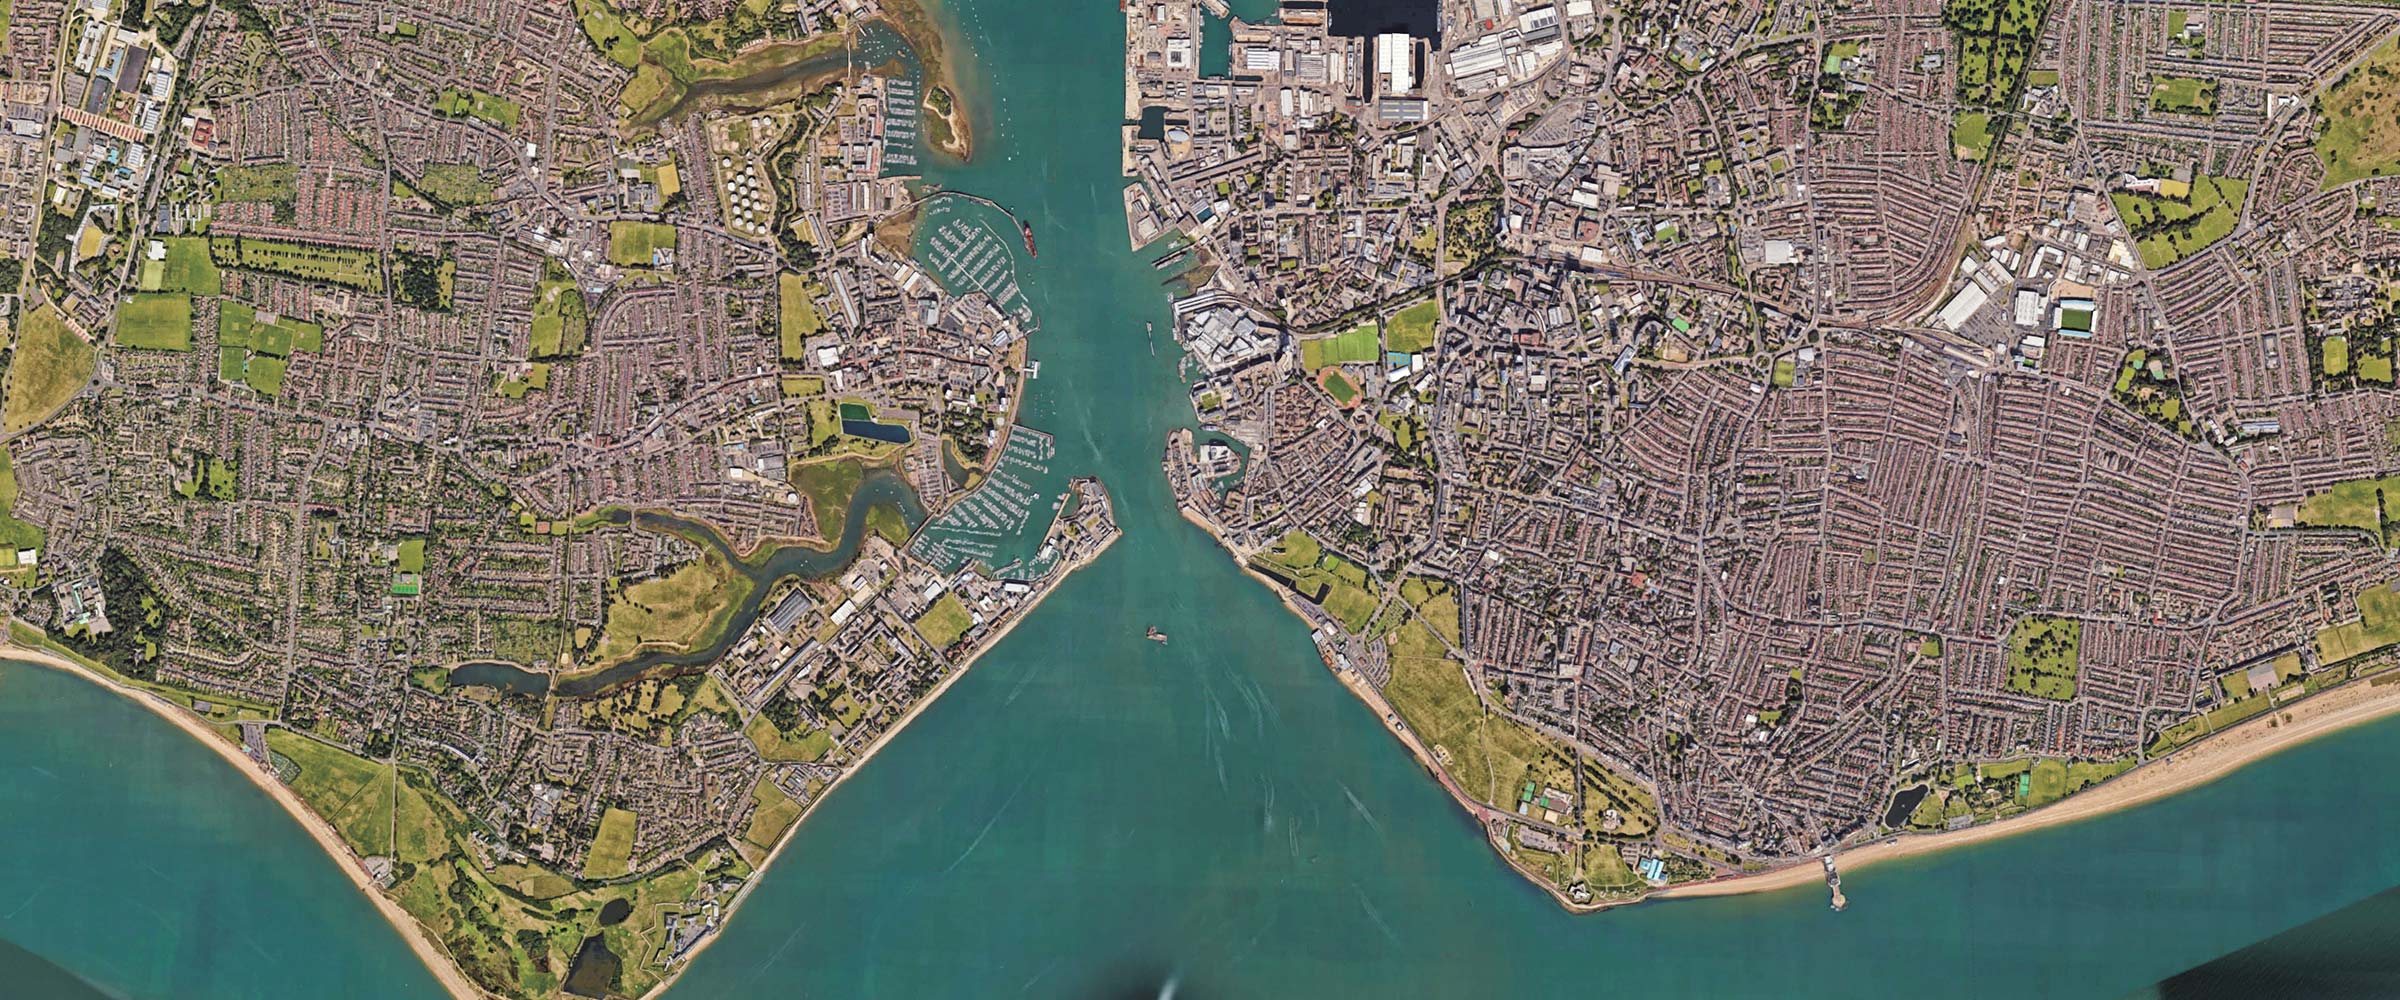 Portsmouth, UK / Image © 2019 Google, TerraMetrics, Kartendaten